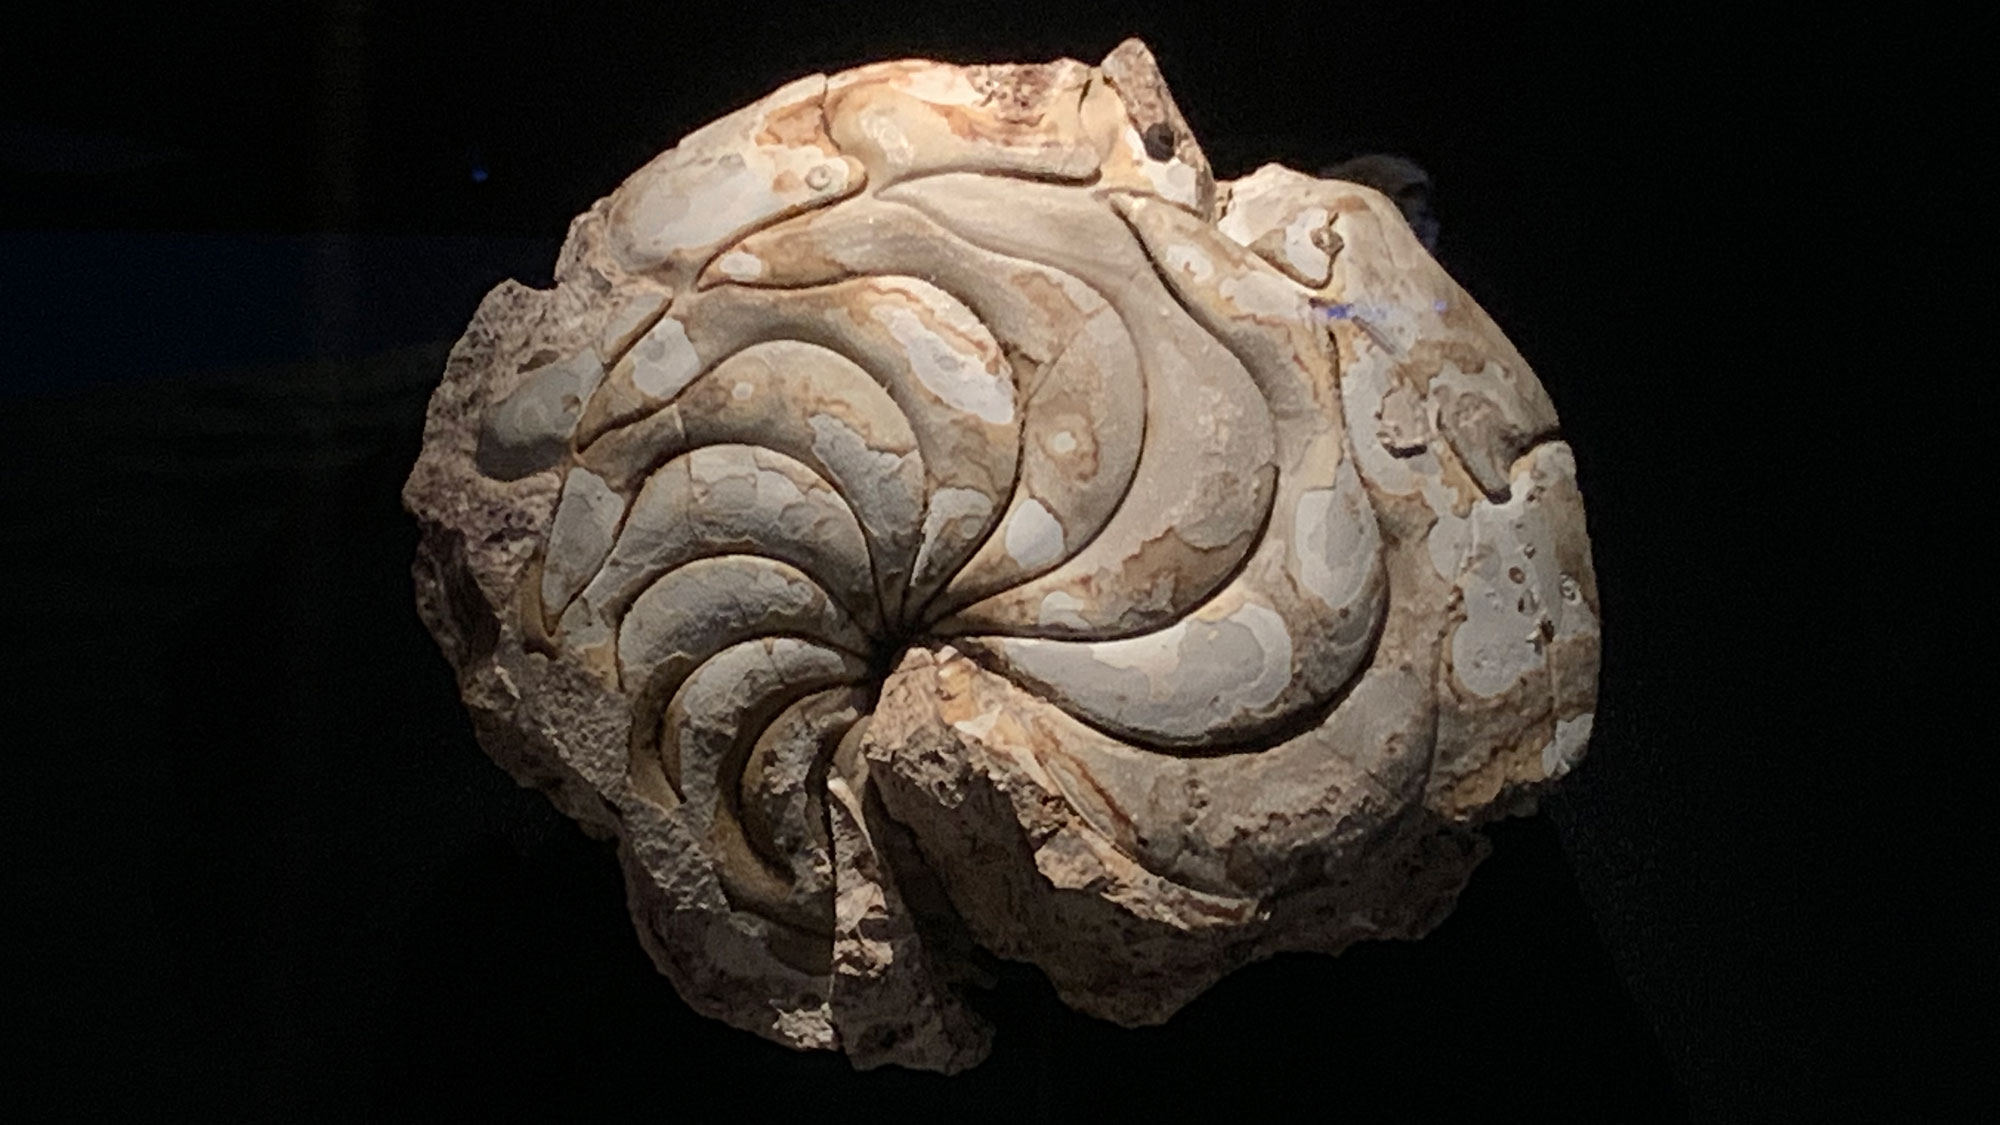 Photograph of the fossil nautiloid Aturia alabamensis.